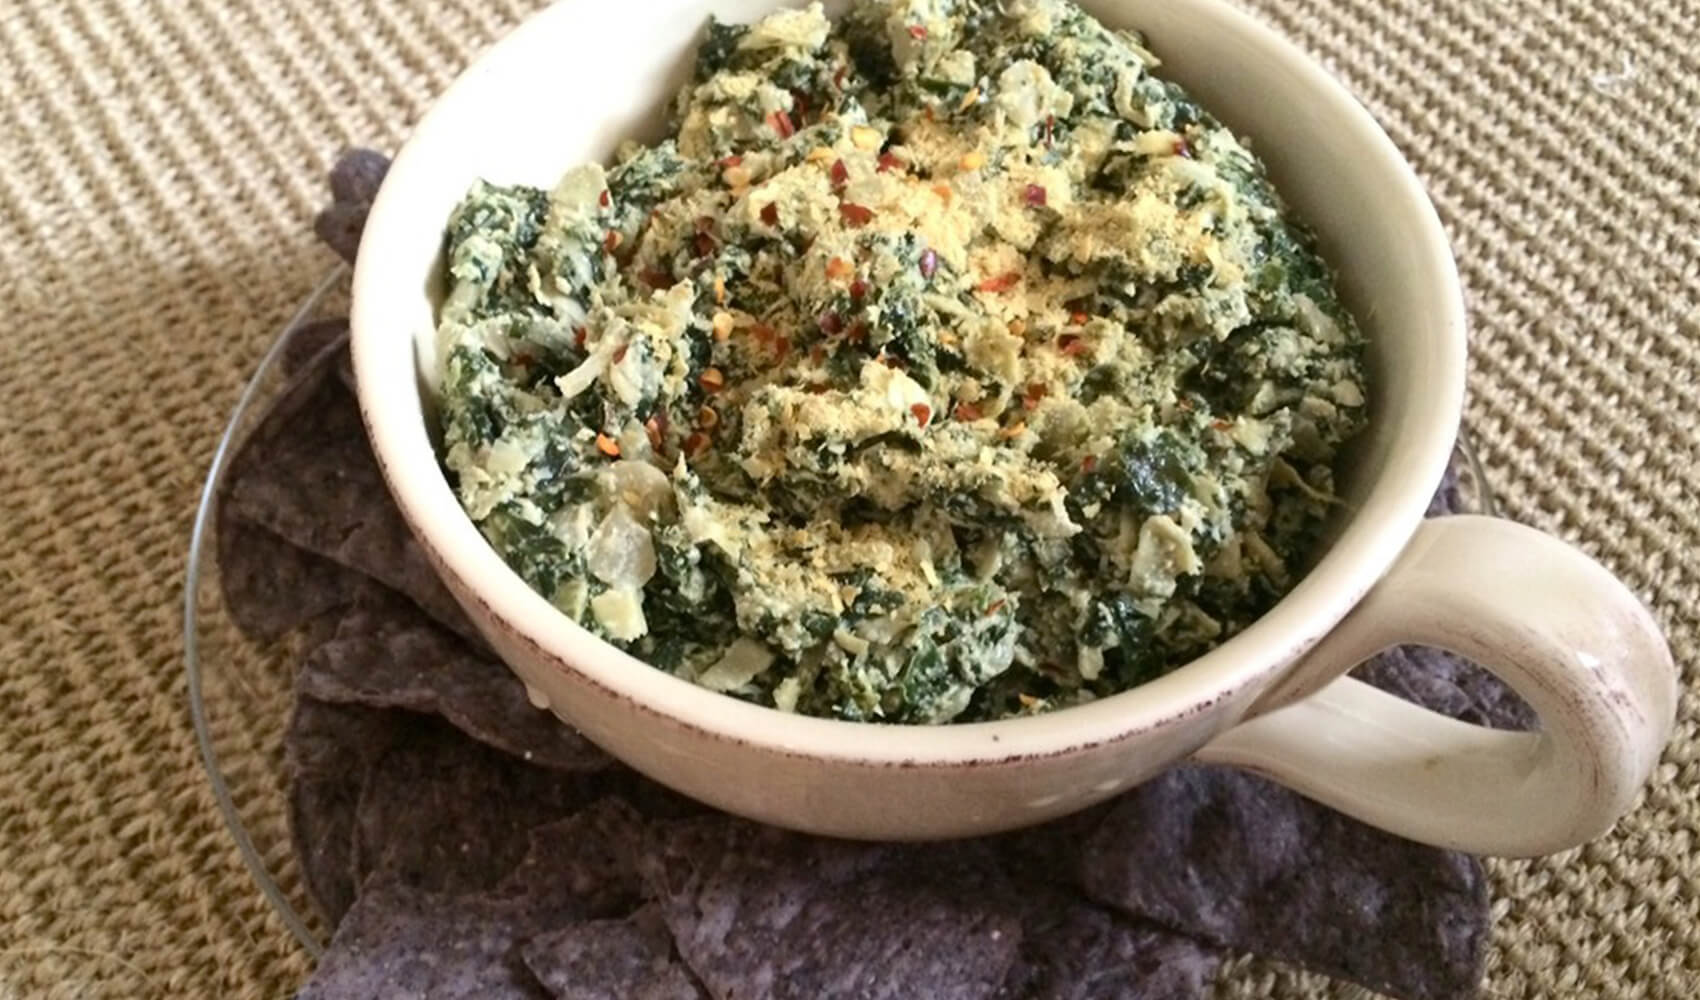 Vegan Spinach and Artichoke Dip